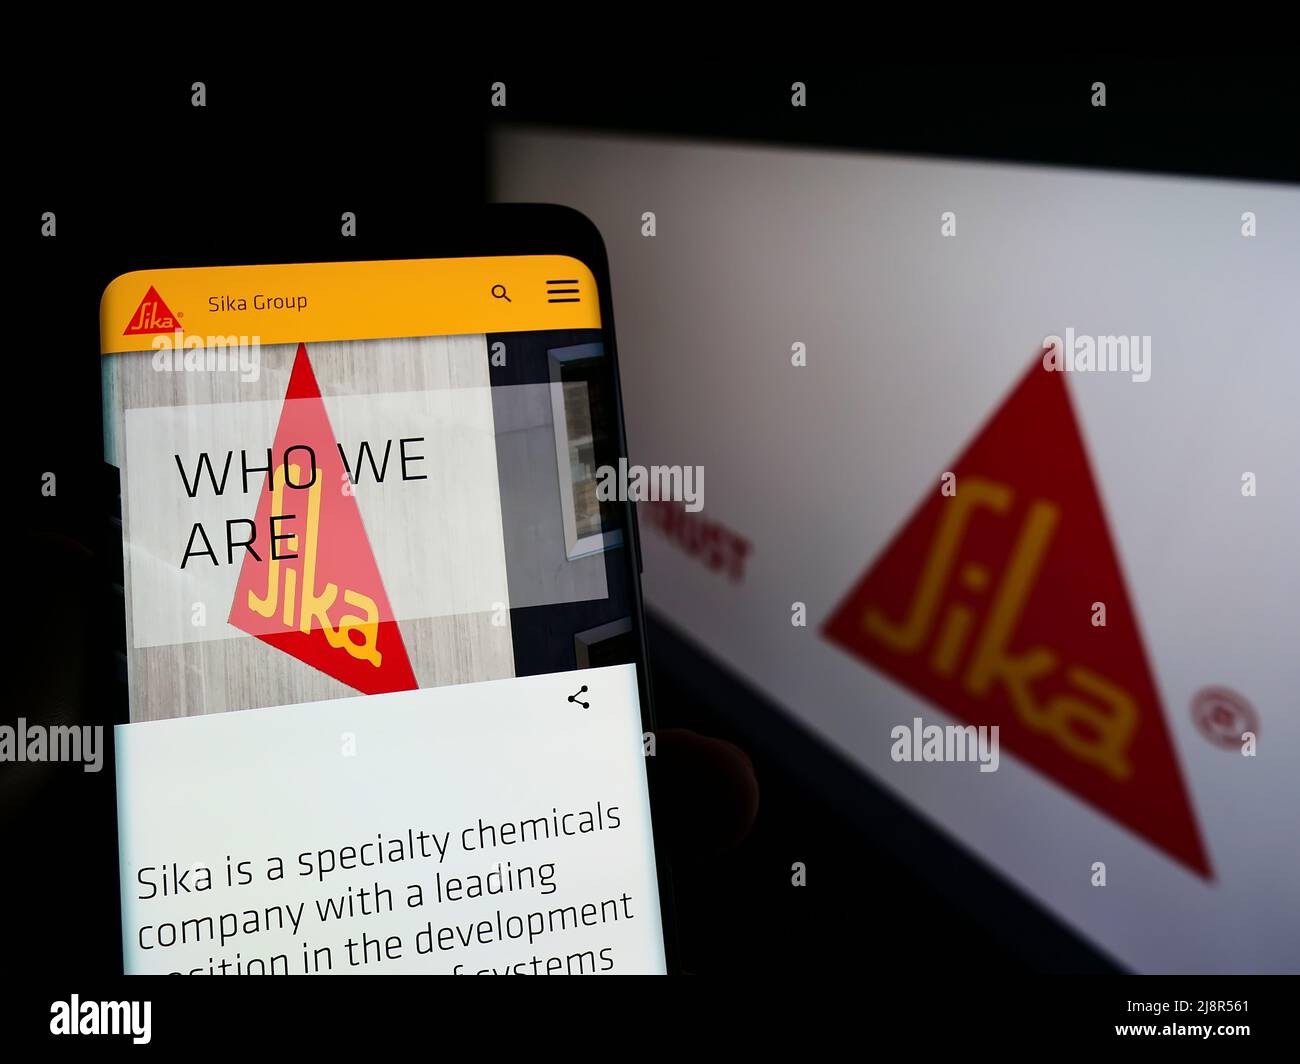 Personne tenant le téléphone portable avec la page web de la société suisse de produits chimiques spécialisés Sika AG sur l'écran devant le logo. Concentrez-vous sur le centre de l'écran du téléphone. Banque D'Images